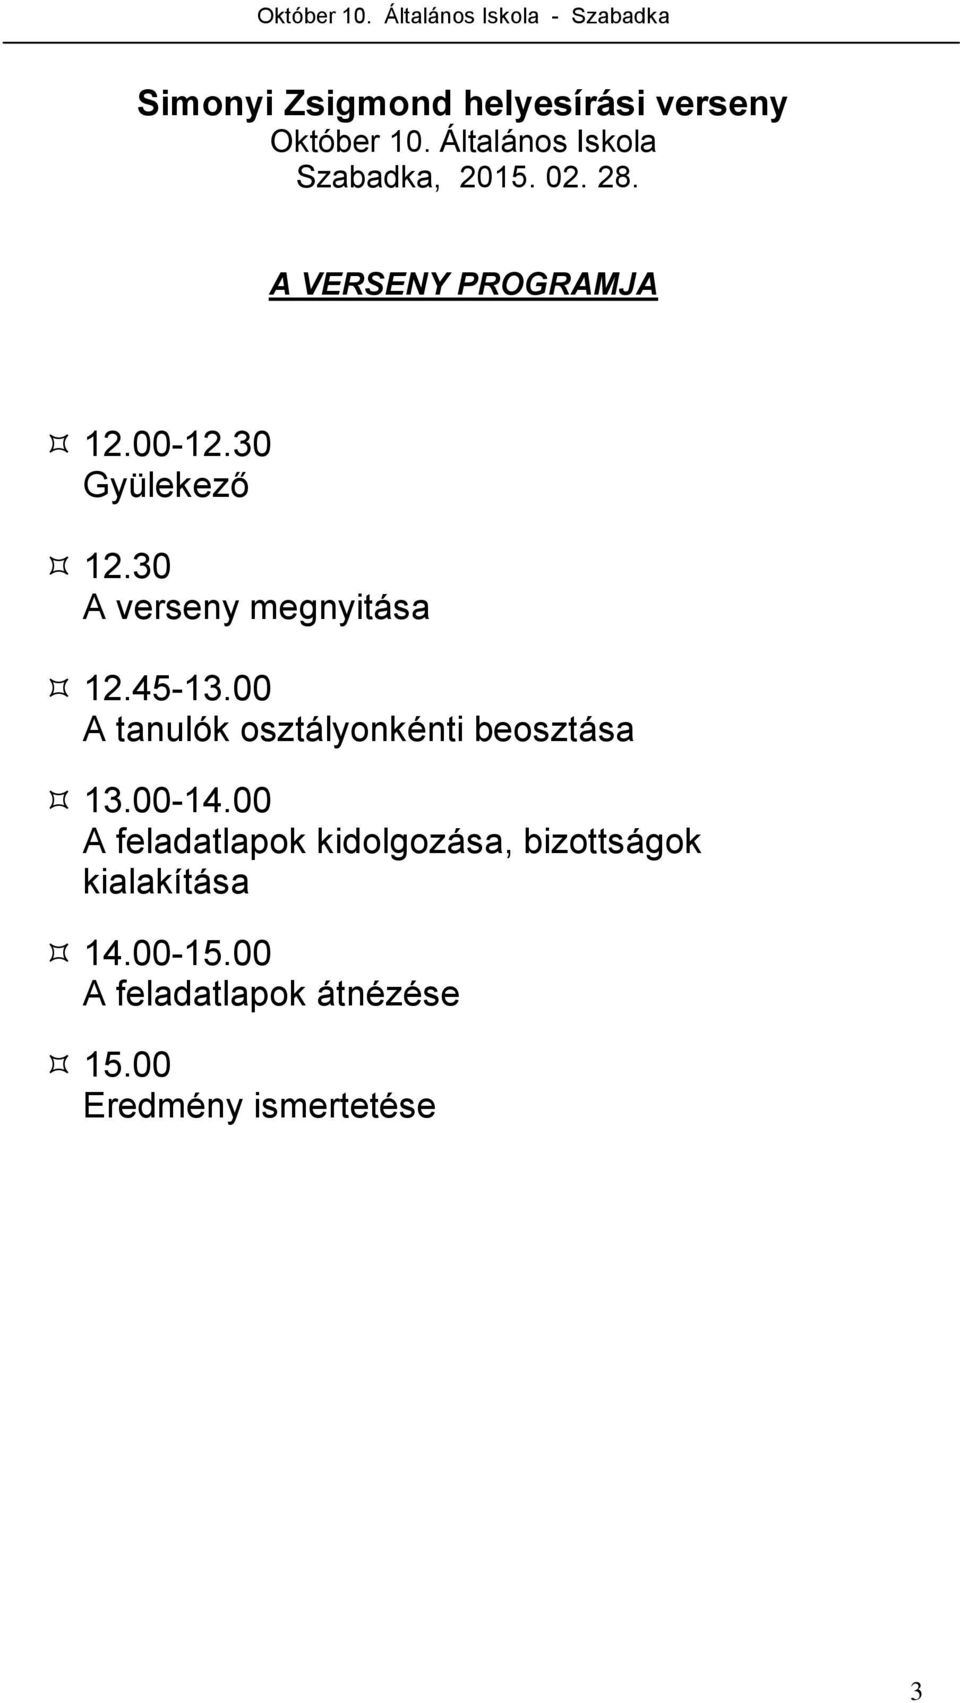 00 A tanulók osztályonkénti beosztása 13.00-14.